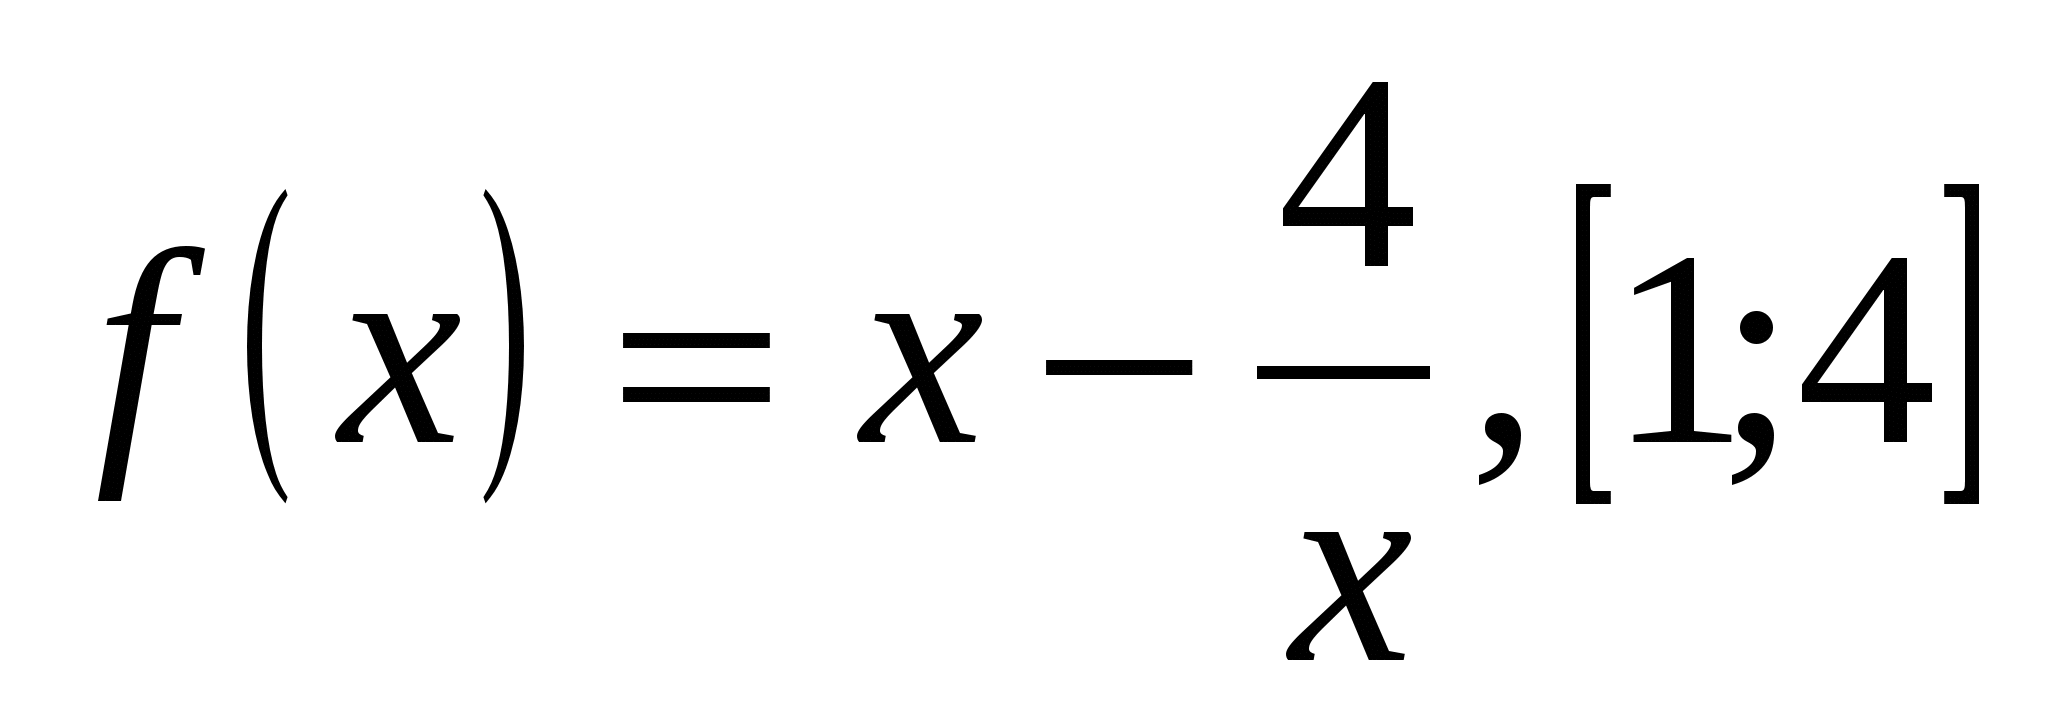 Урок по алгебре на тему наибольшее и наименьшее значения функции на отрезке